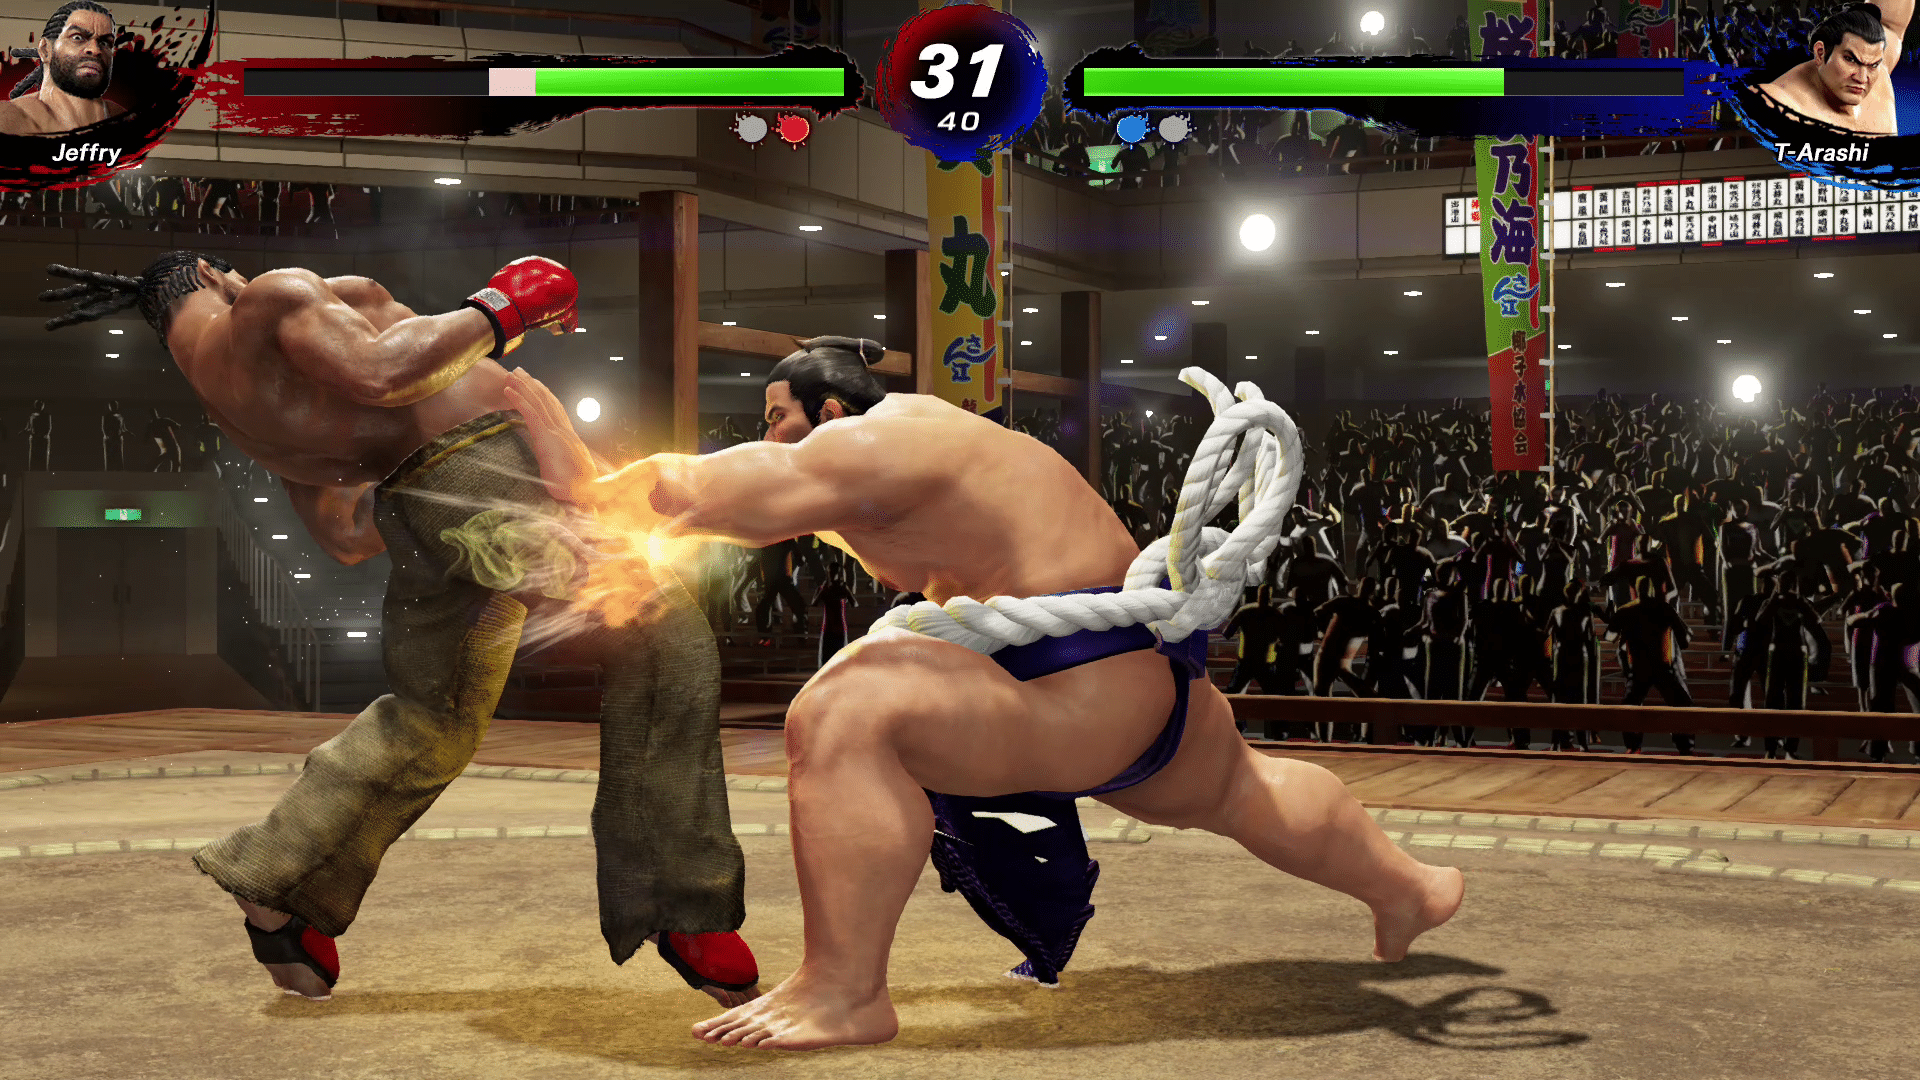 Virtua Fighter 5 Ultimate Showdown Update 1.03